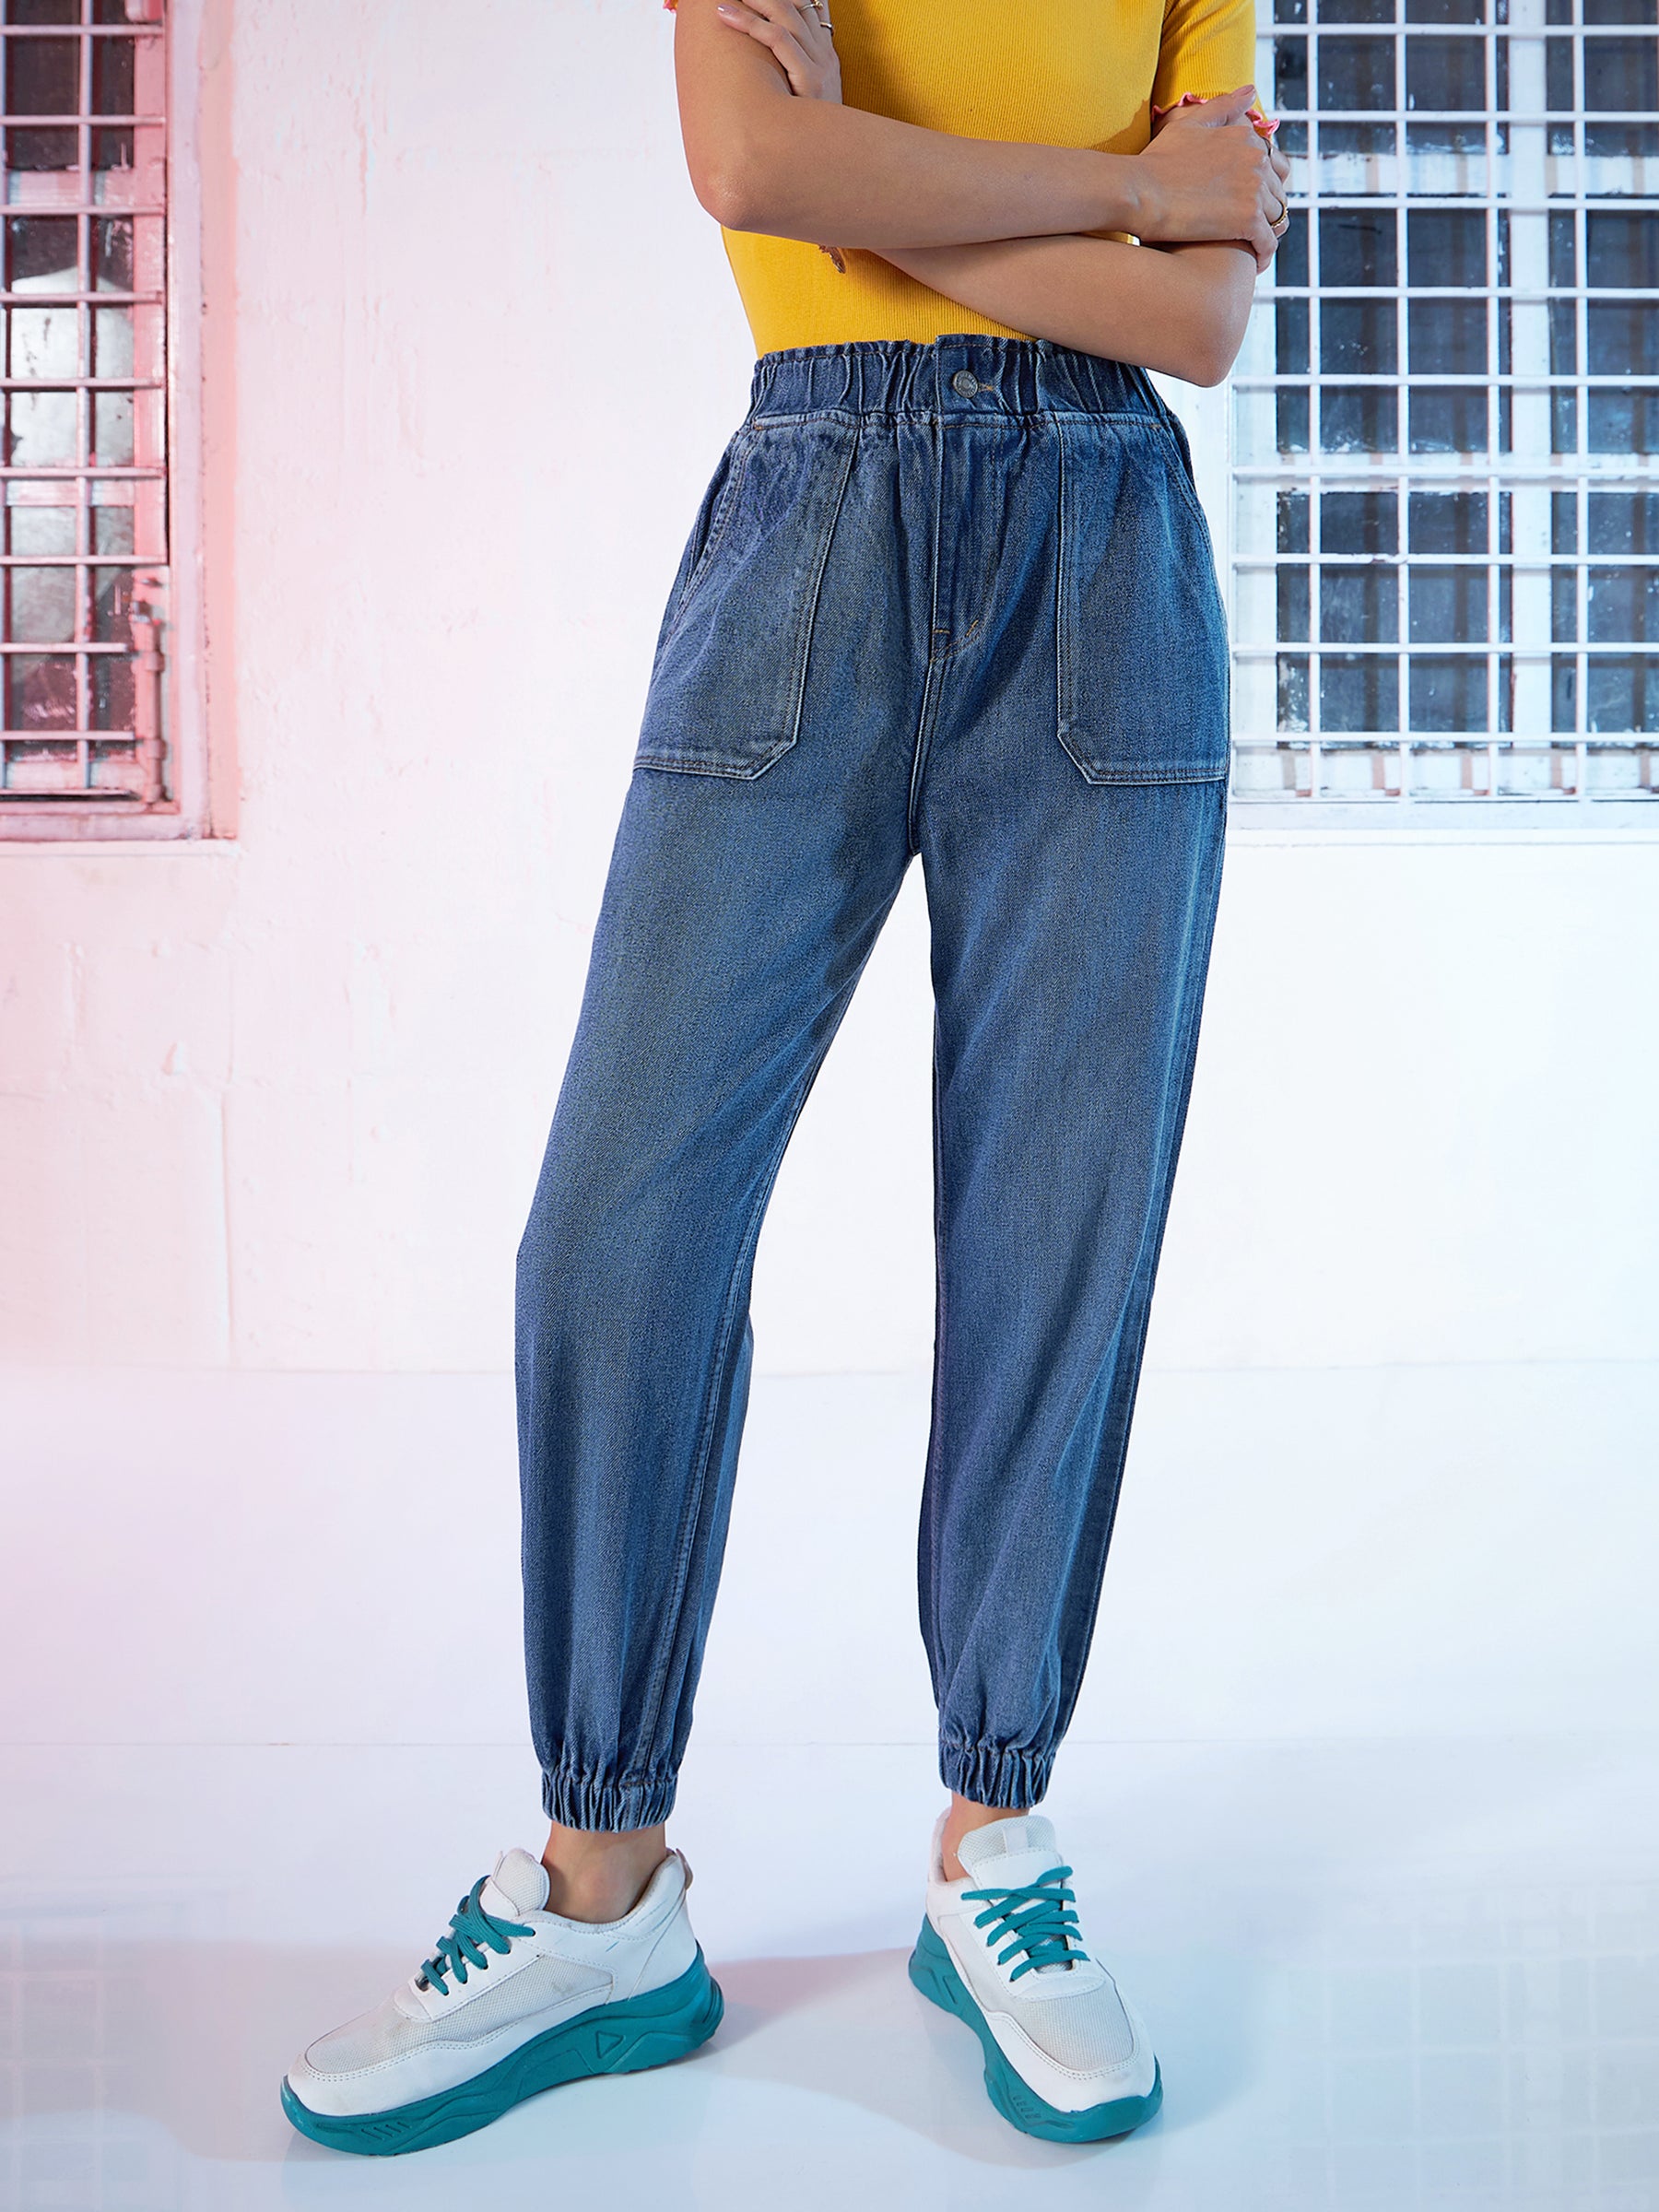 Jeans-Women Full Length Jogger Jeans